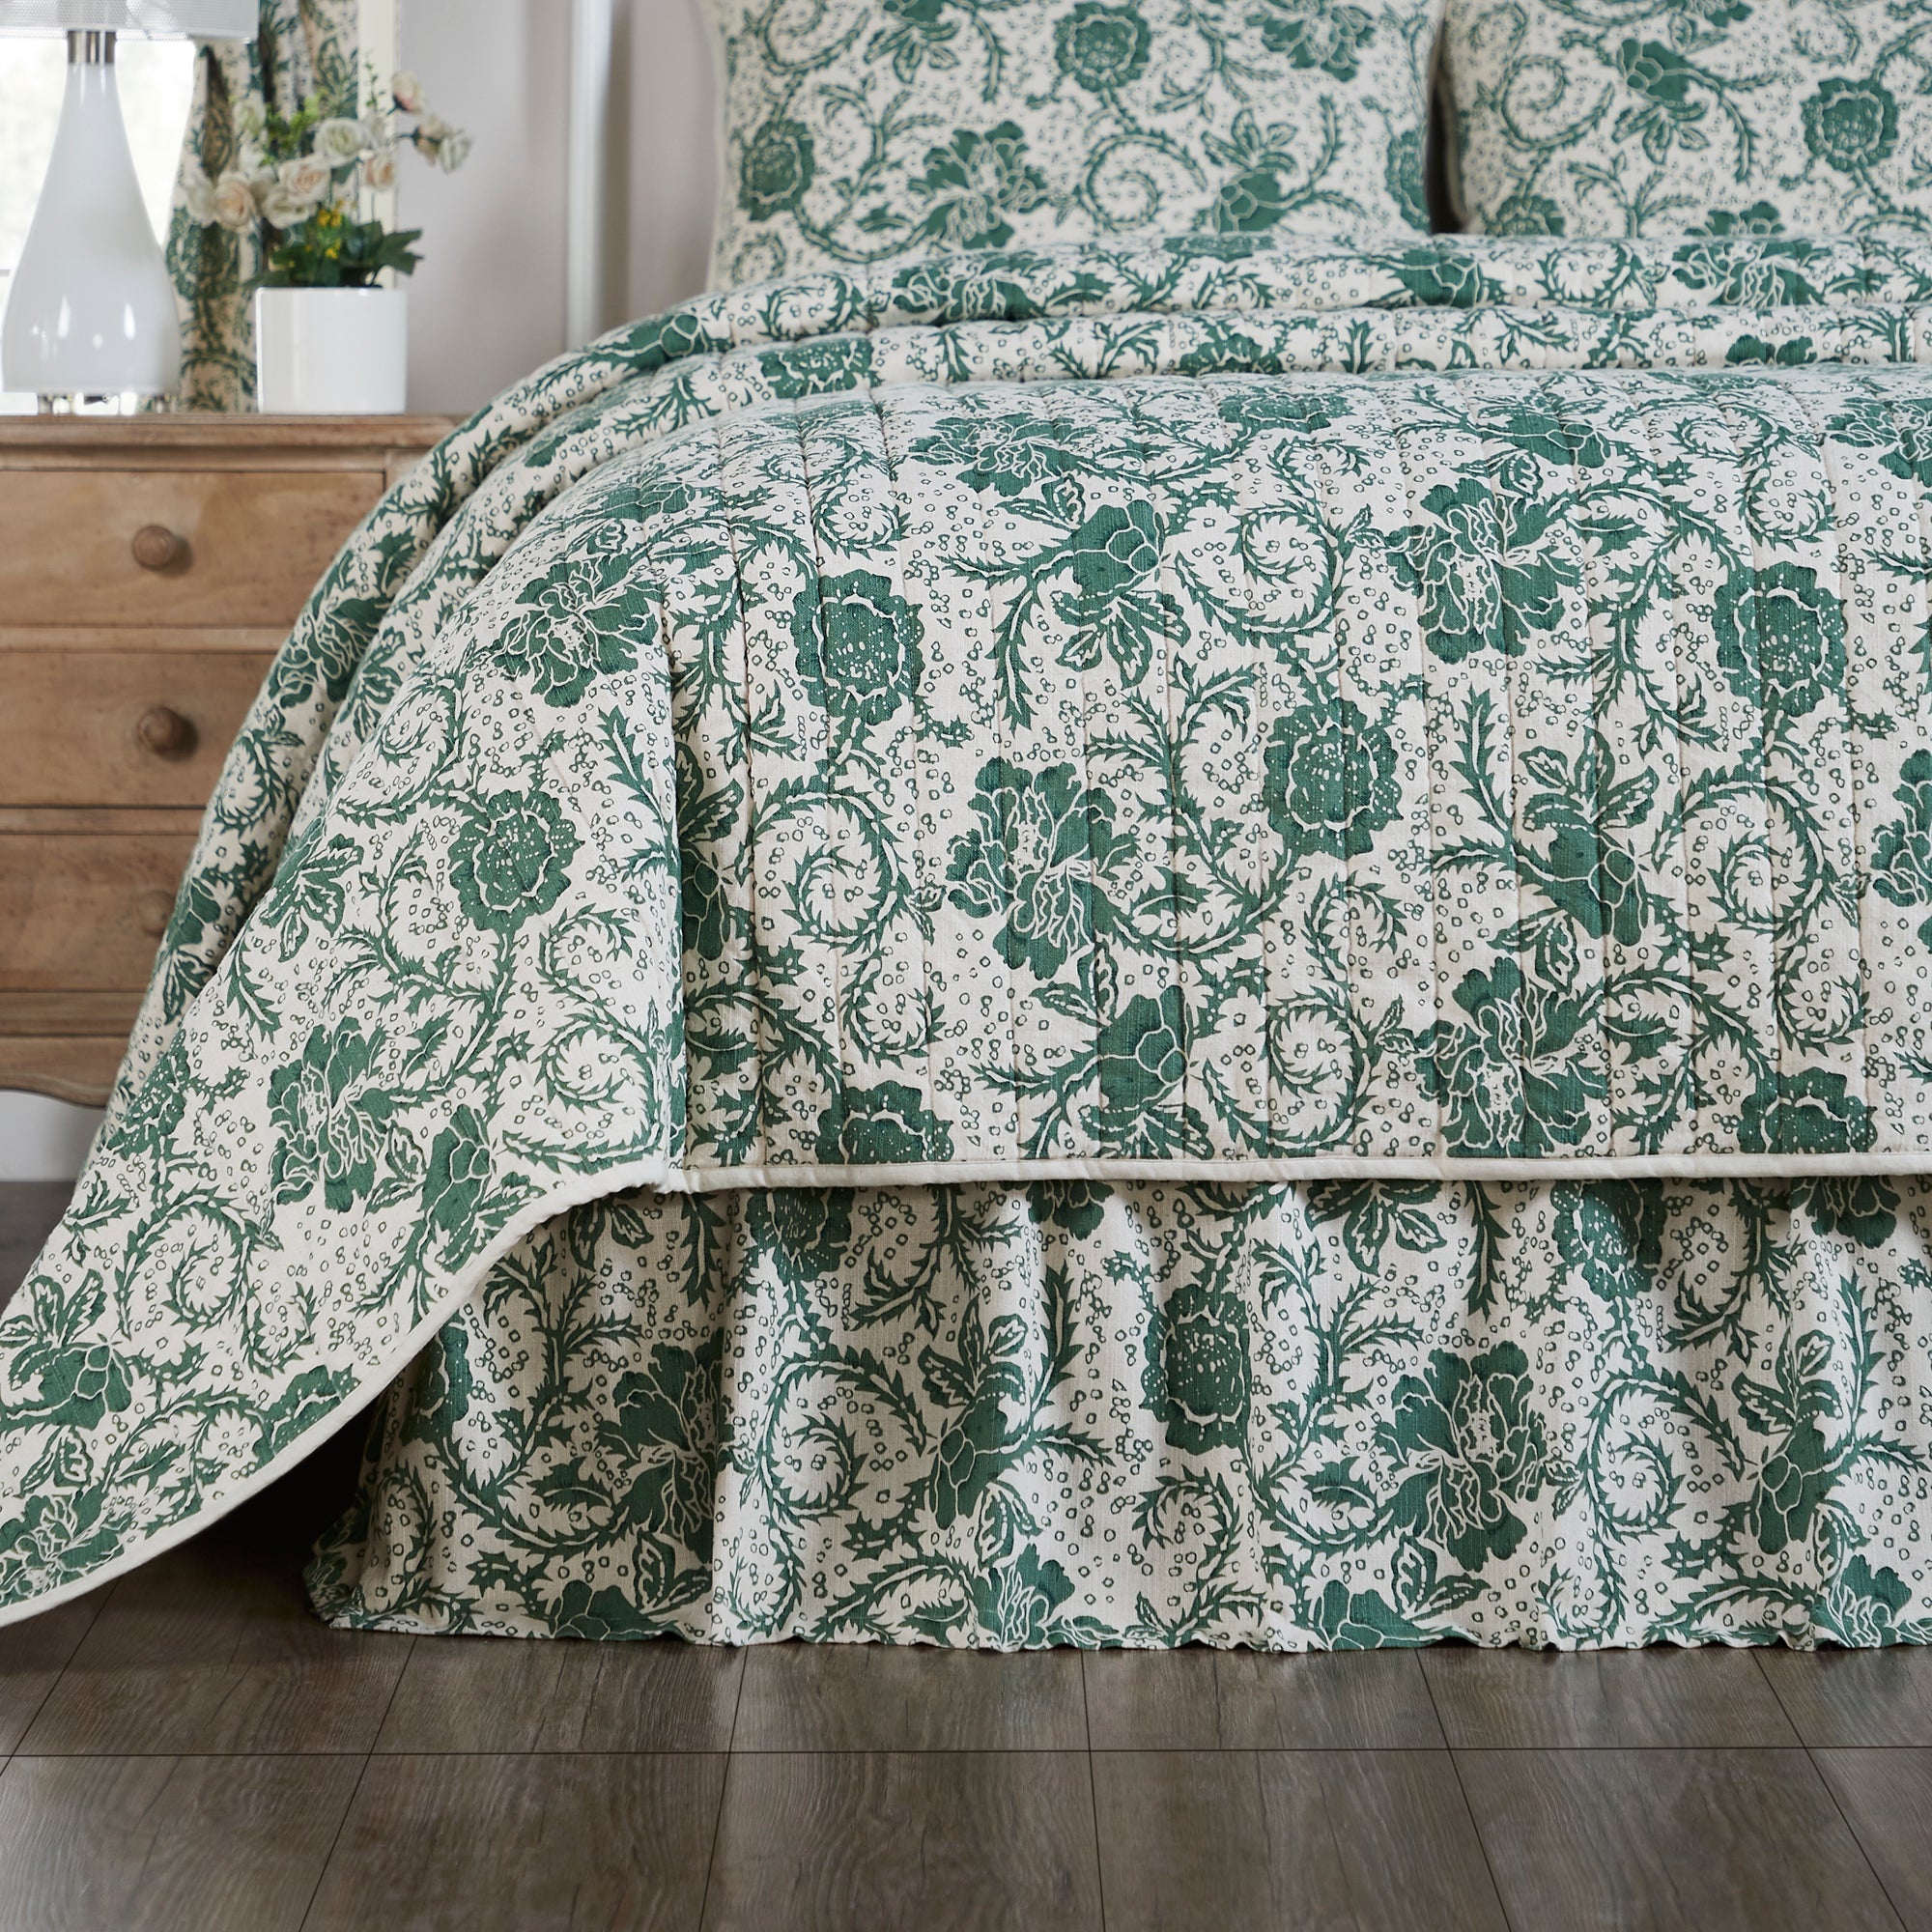 Dorset Green Floral Queen Bed Skirt 60x80x16 VHC Brands